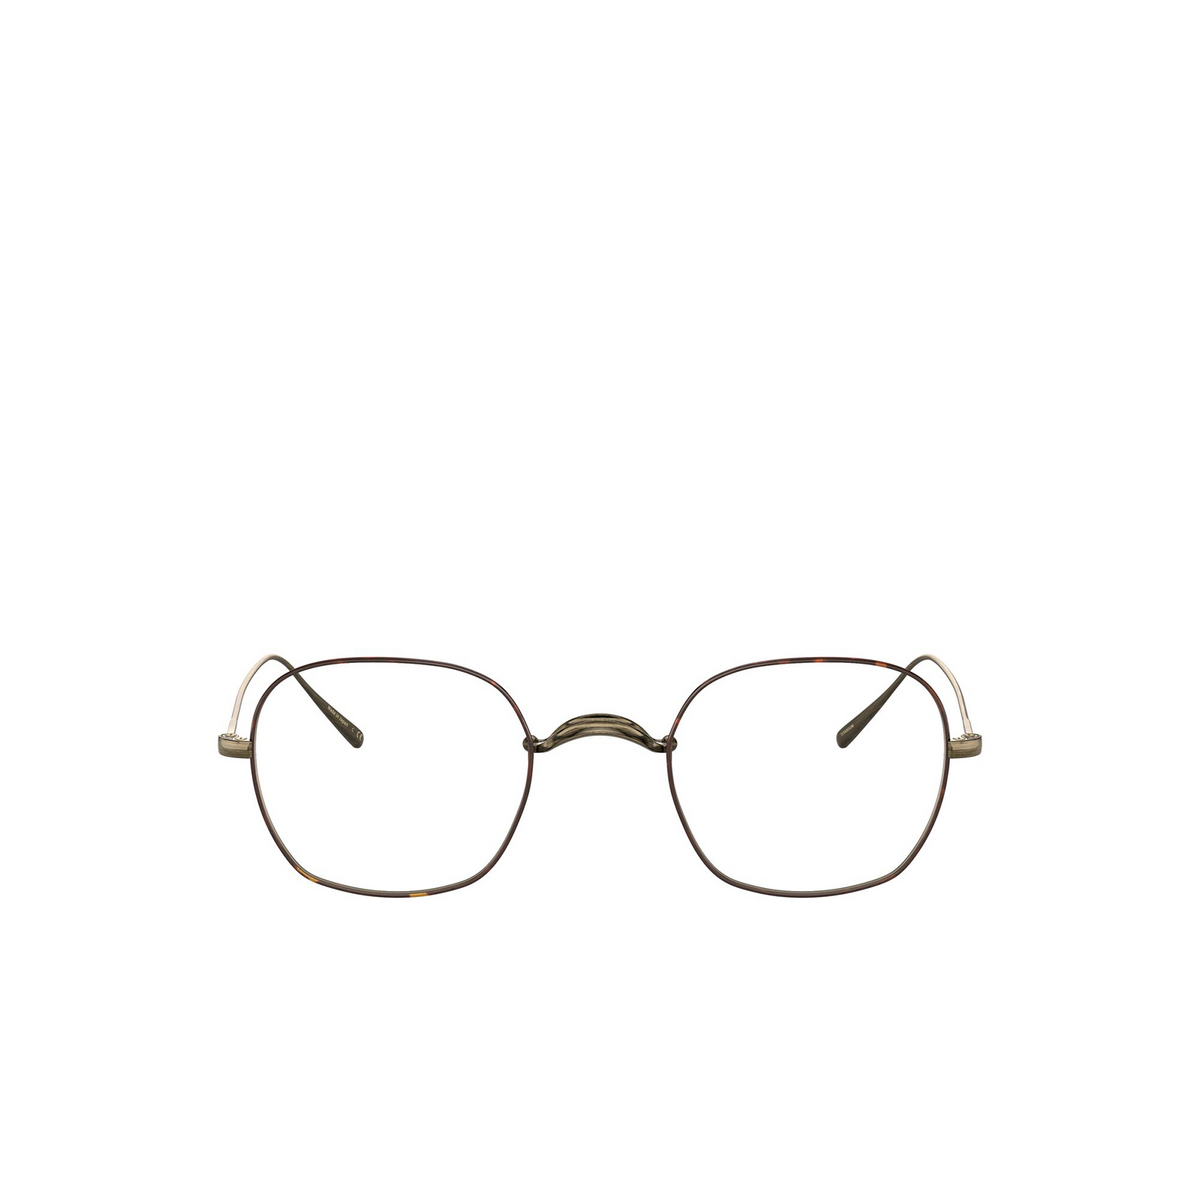 Oliver Peoples® Square Eyeglasses: Carles OV1270T color Antique Gold / Dtbk 5284 - 1/3.